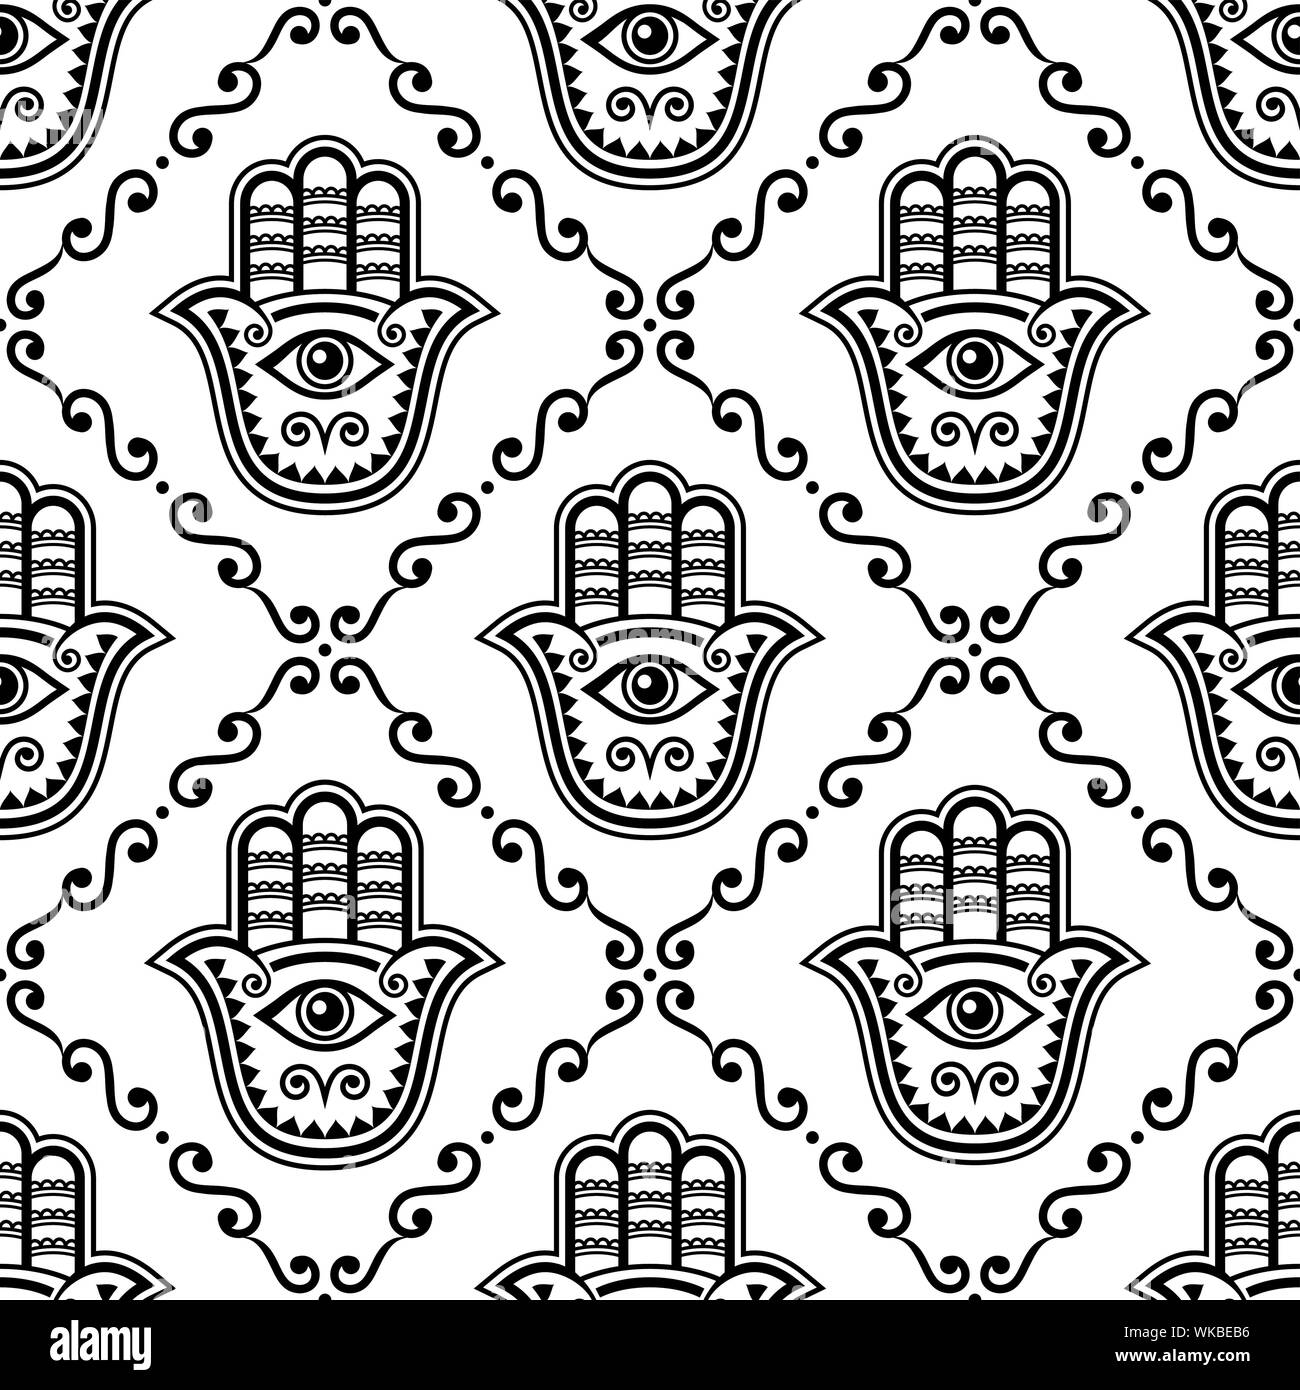 Hamsa Hand nahtlose Vektor Muster, khamsa oder die Hand von Fatima sich wiederholende Design, Symbol für Schutz von Devil eye Hintergrund in Schwarz und Weiß. Stock Vektor